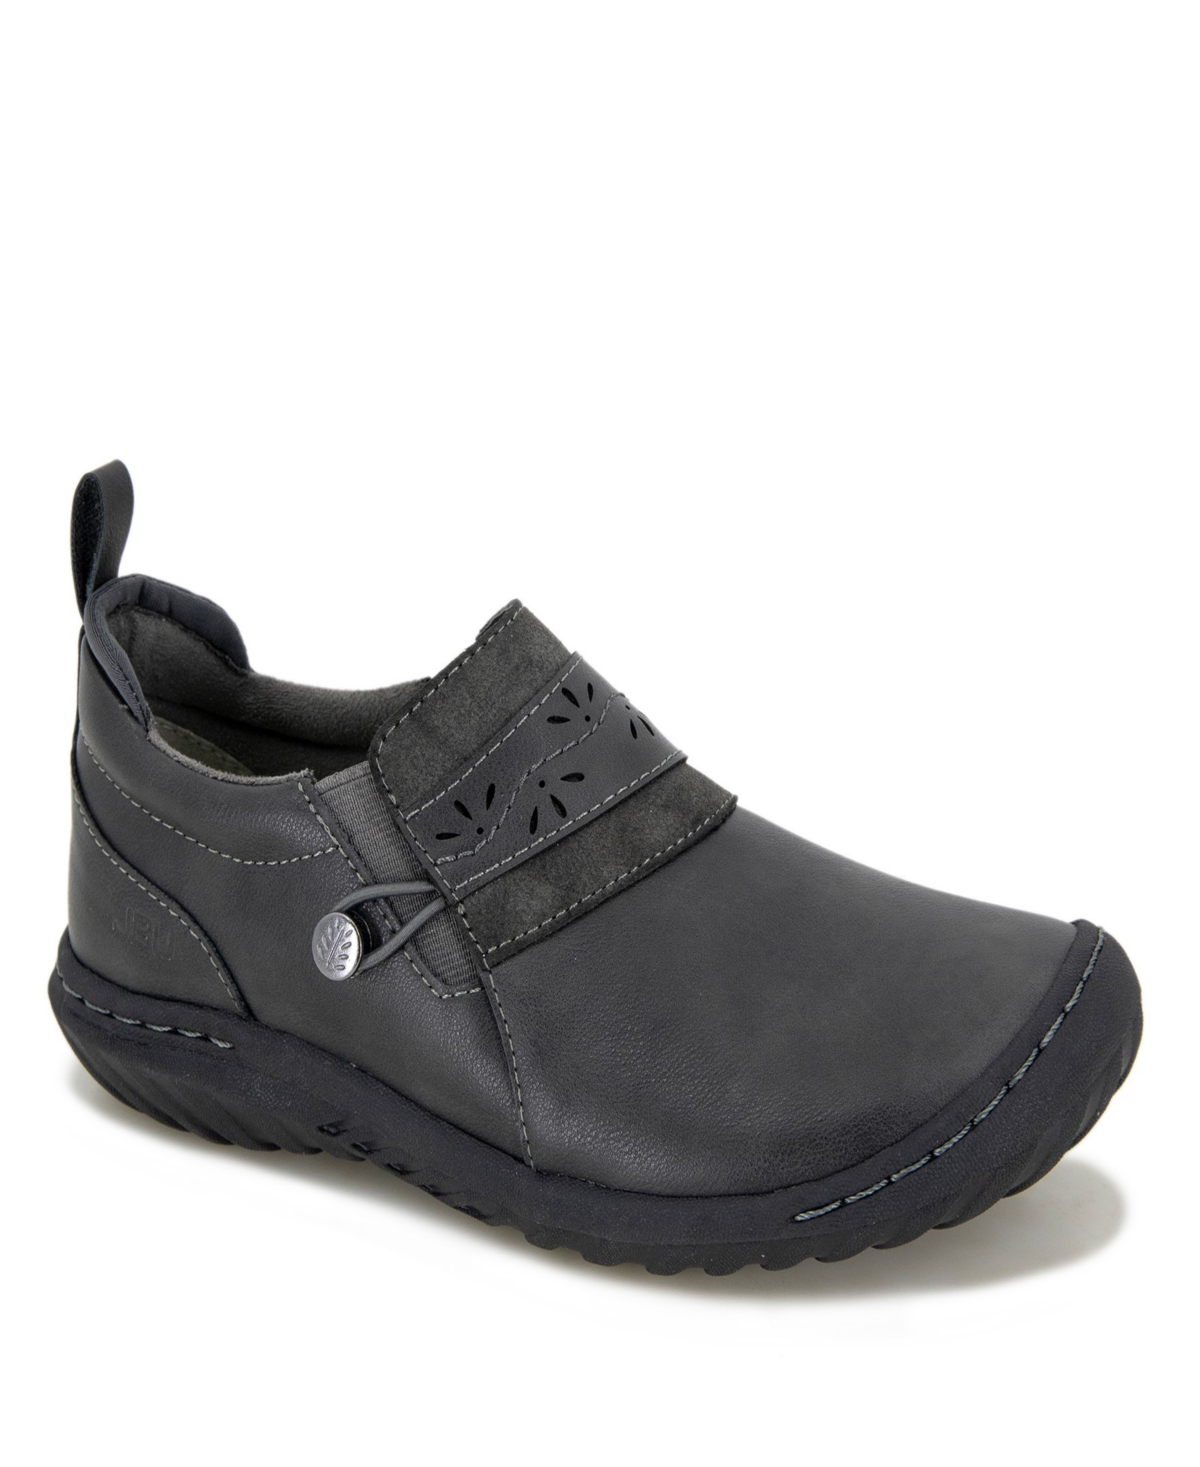 Women's Fern Casual Moc Shoe - Black